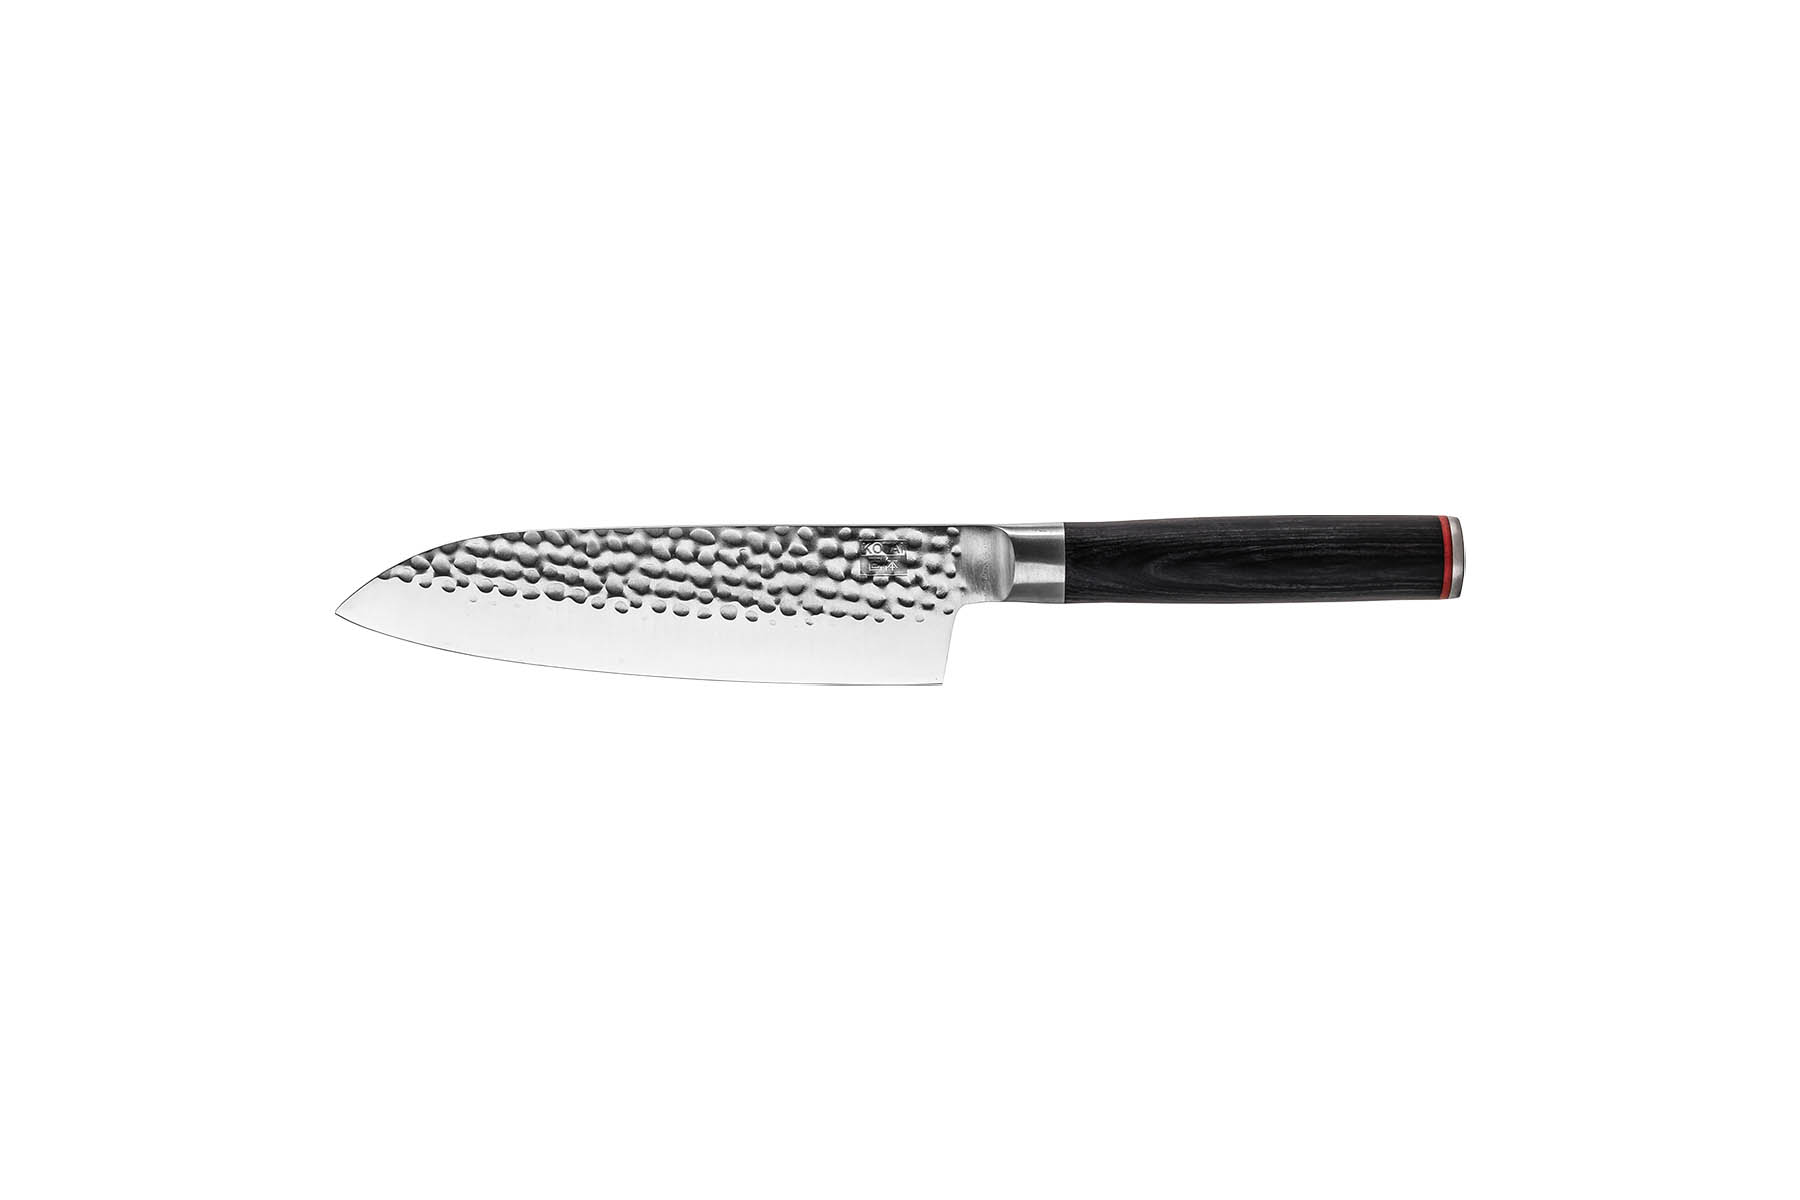 Couteau de cuisine japonais Kotetsu de Tamahagane - Couteau santoku 18 cm